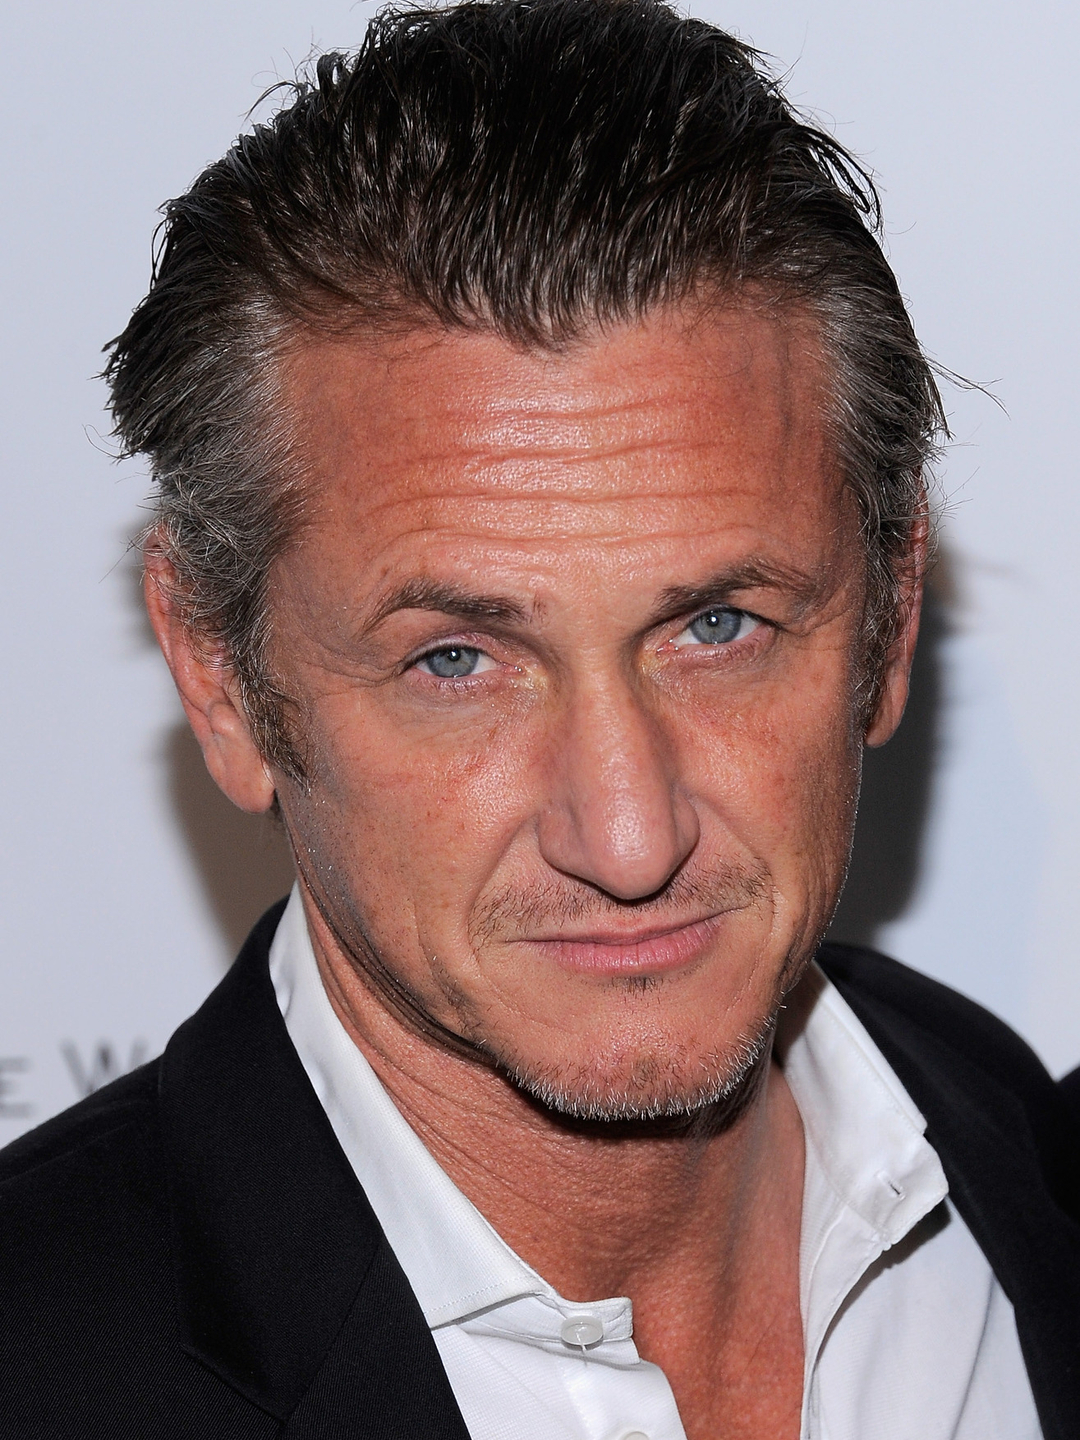 Sean Penn current look